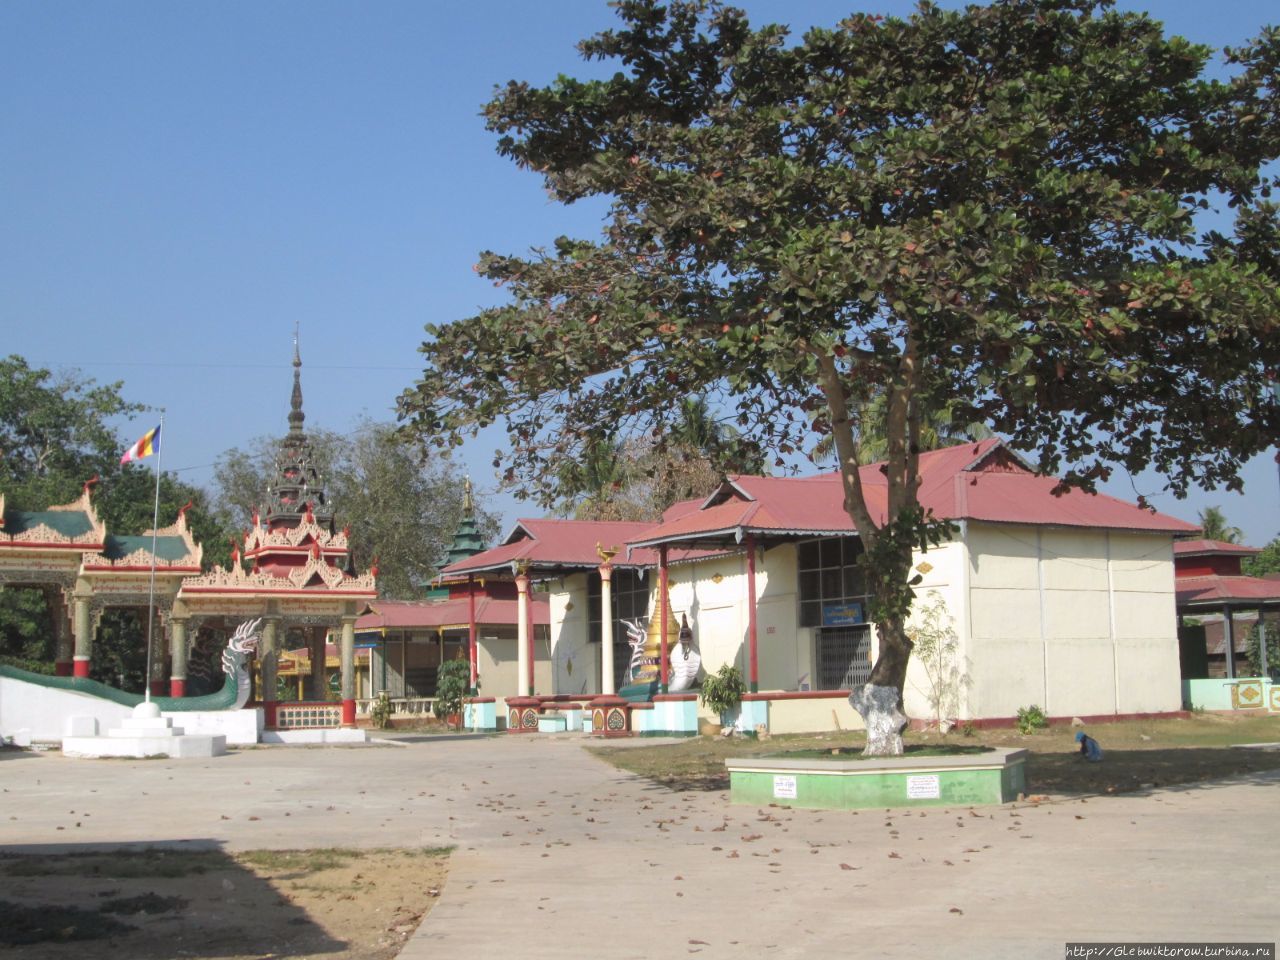 Монастыри по пути в городской парк Патейн, Мьянма